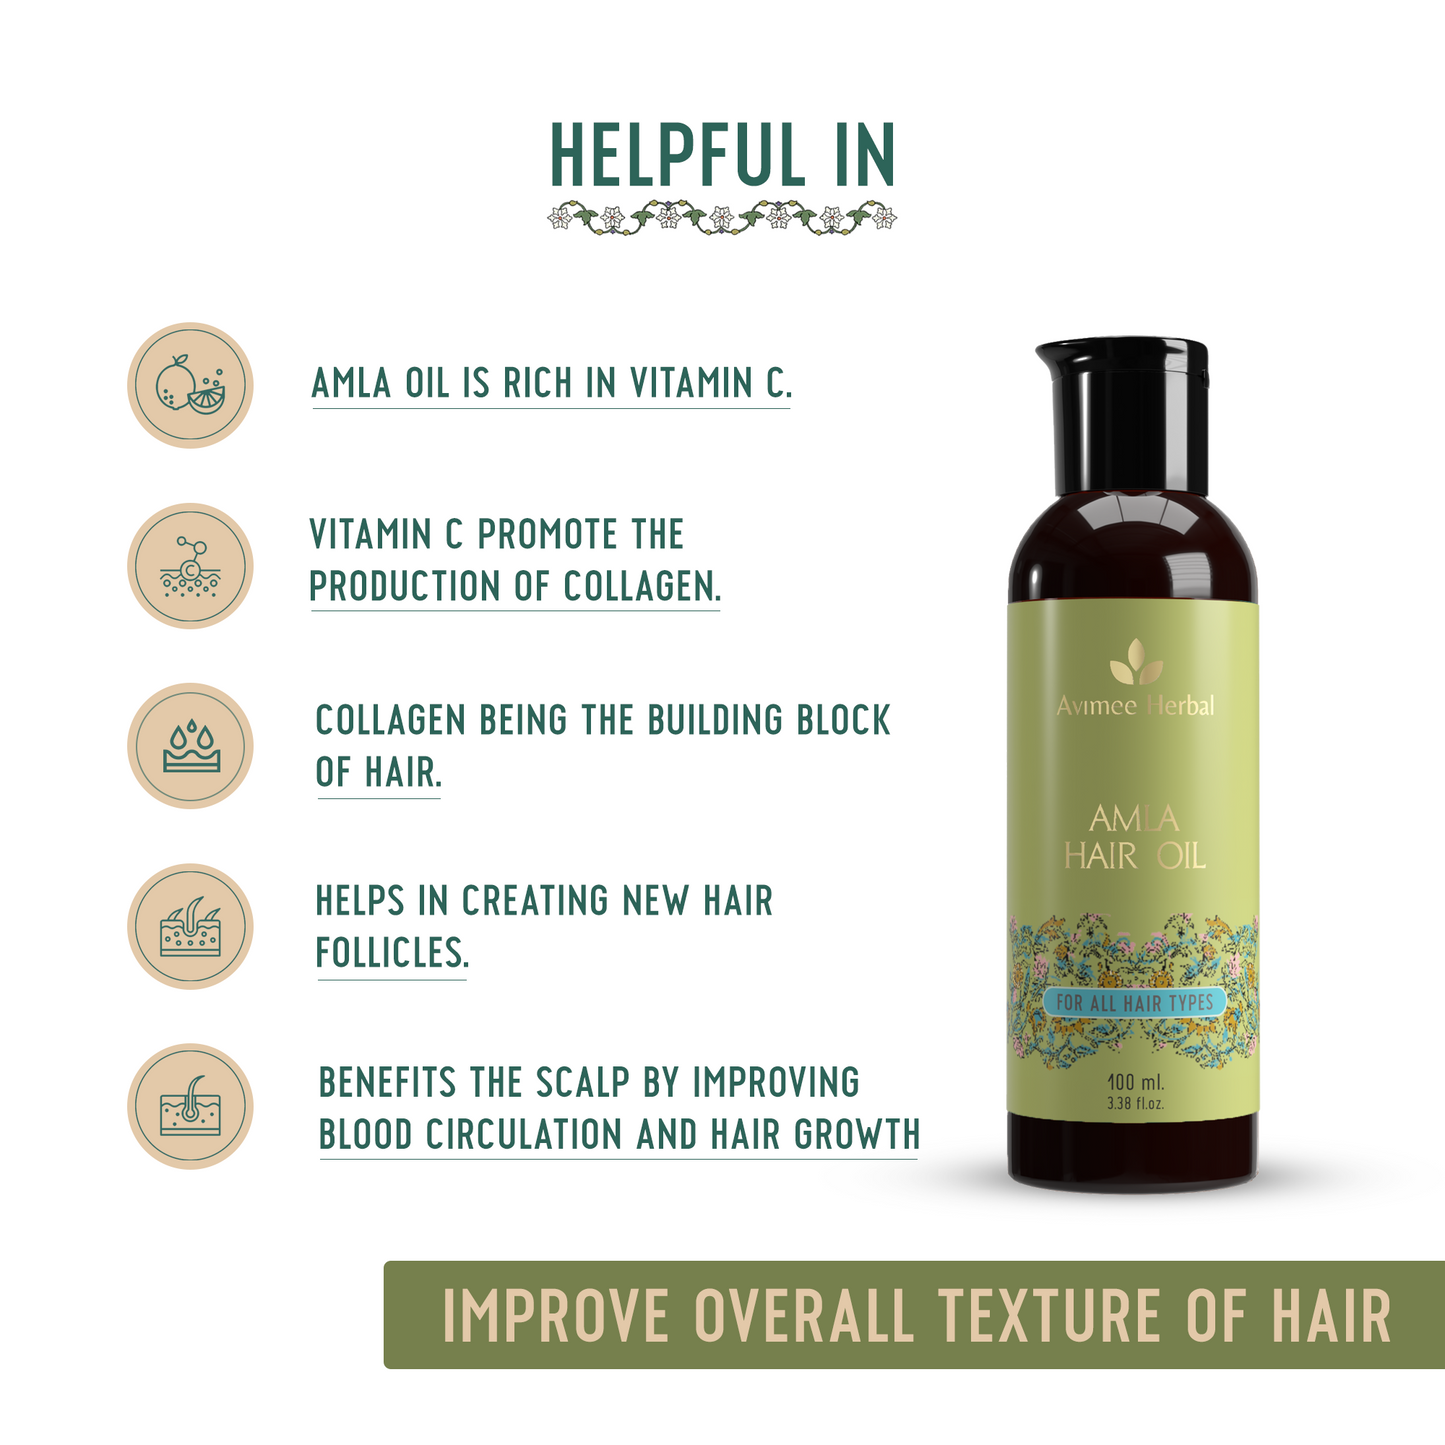 Avimee Herbal Amla Hair Oil